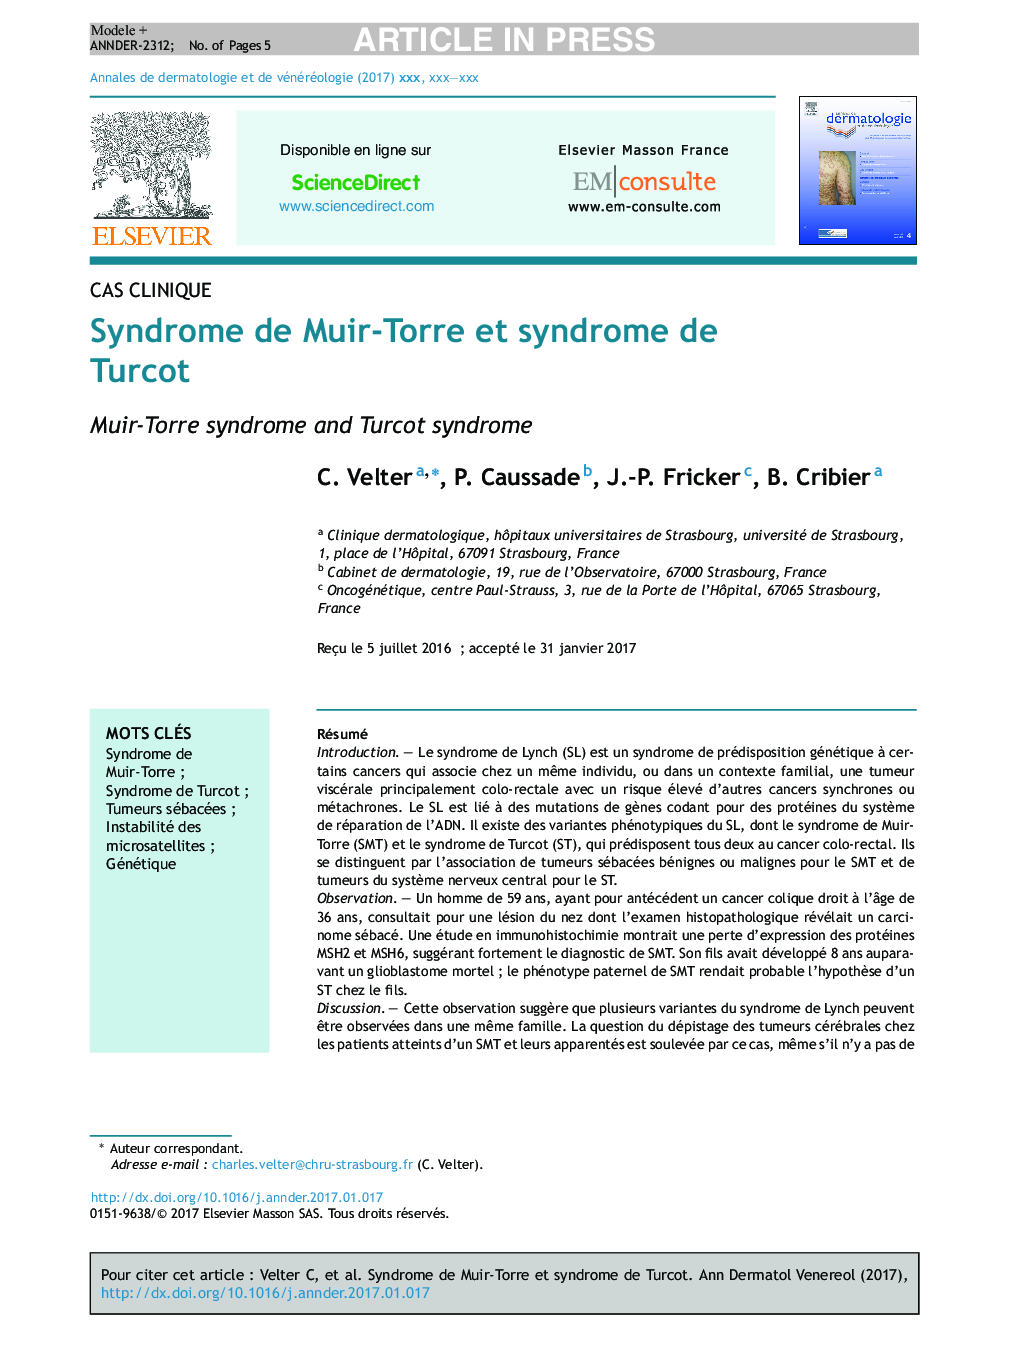 Syndrome de Muir-Torre et syndrome de Turcot